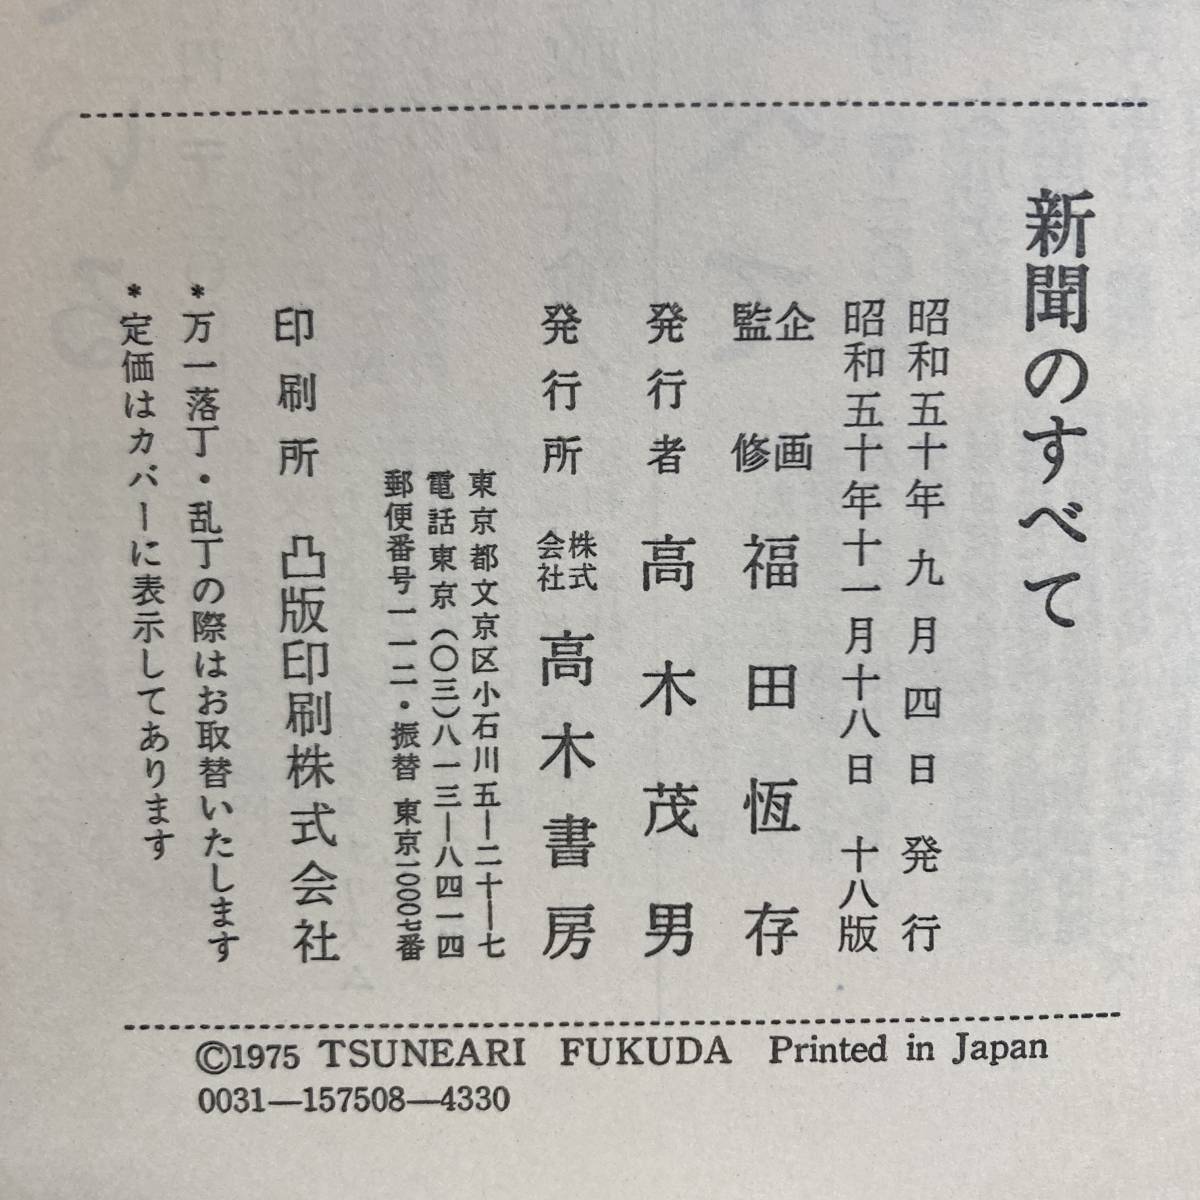 A < японский будущее газета. все | Fukuda ..| Showa 50 год | высота дерево книжный магазин > средства массовой коммуникации ja-na ритм 